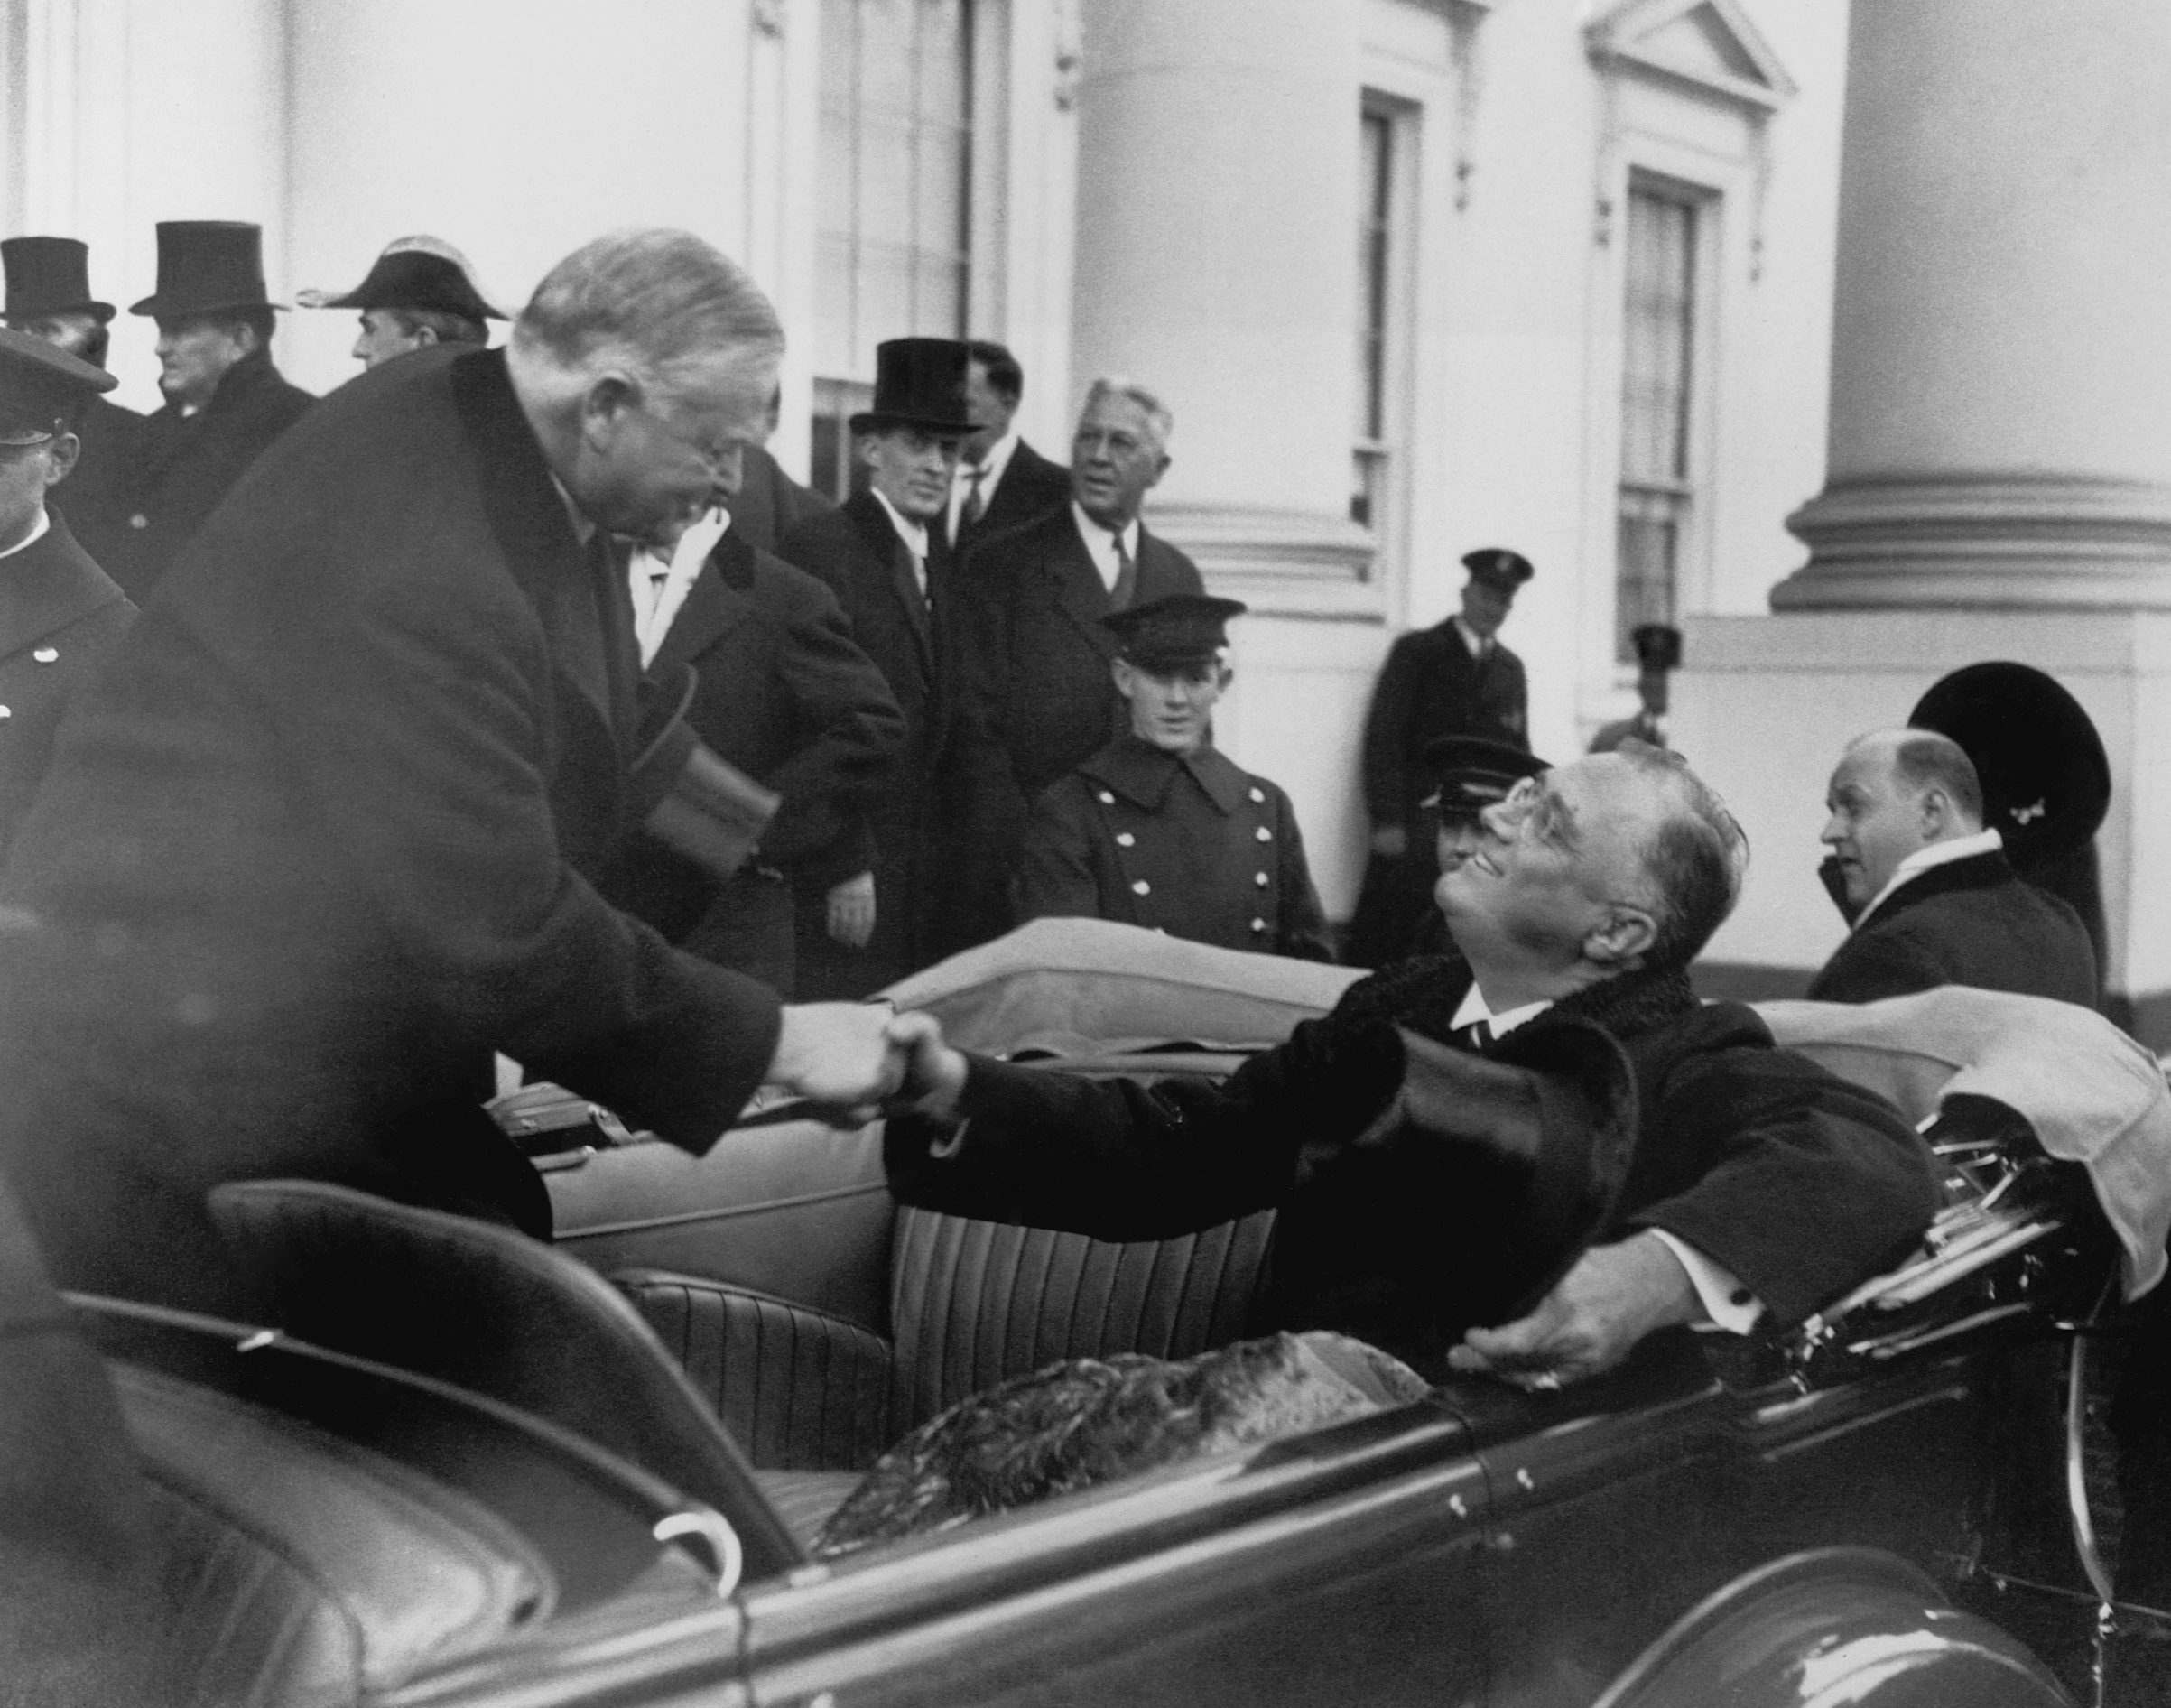 Herbert Hoover and Franklin Roosevelt Shaking Hands